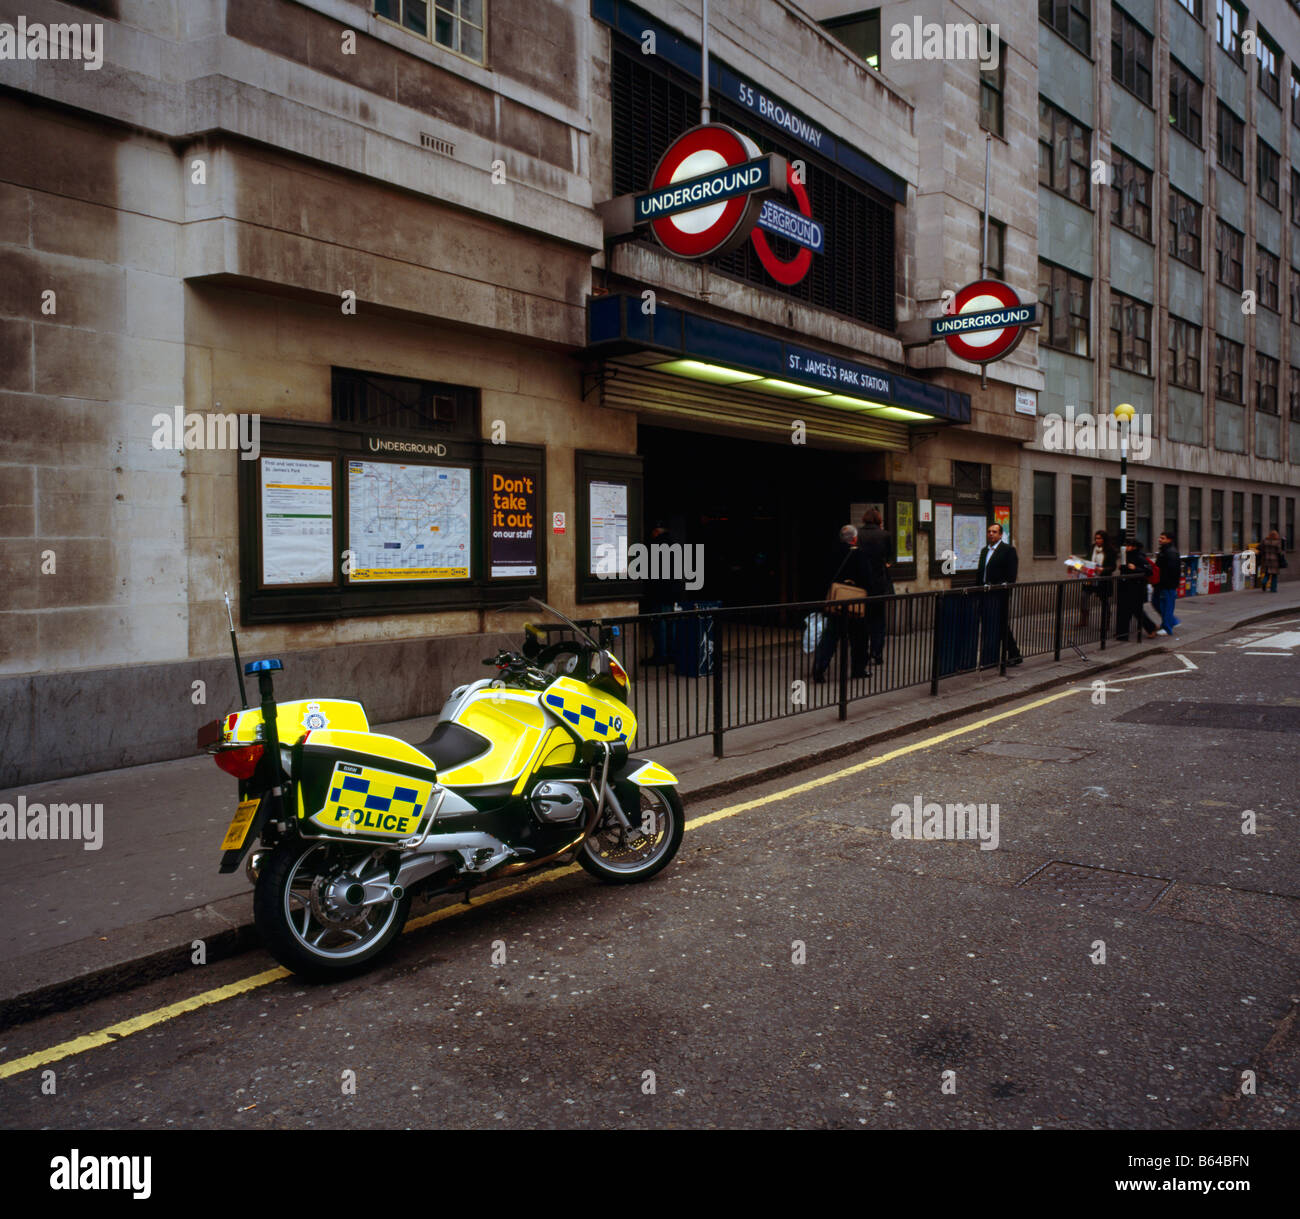 British Transport Police motociclo al di fuori di St James Park stazione della metropolitana. Londra, Inghilterra, Regno Unito. Foto Stock